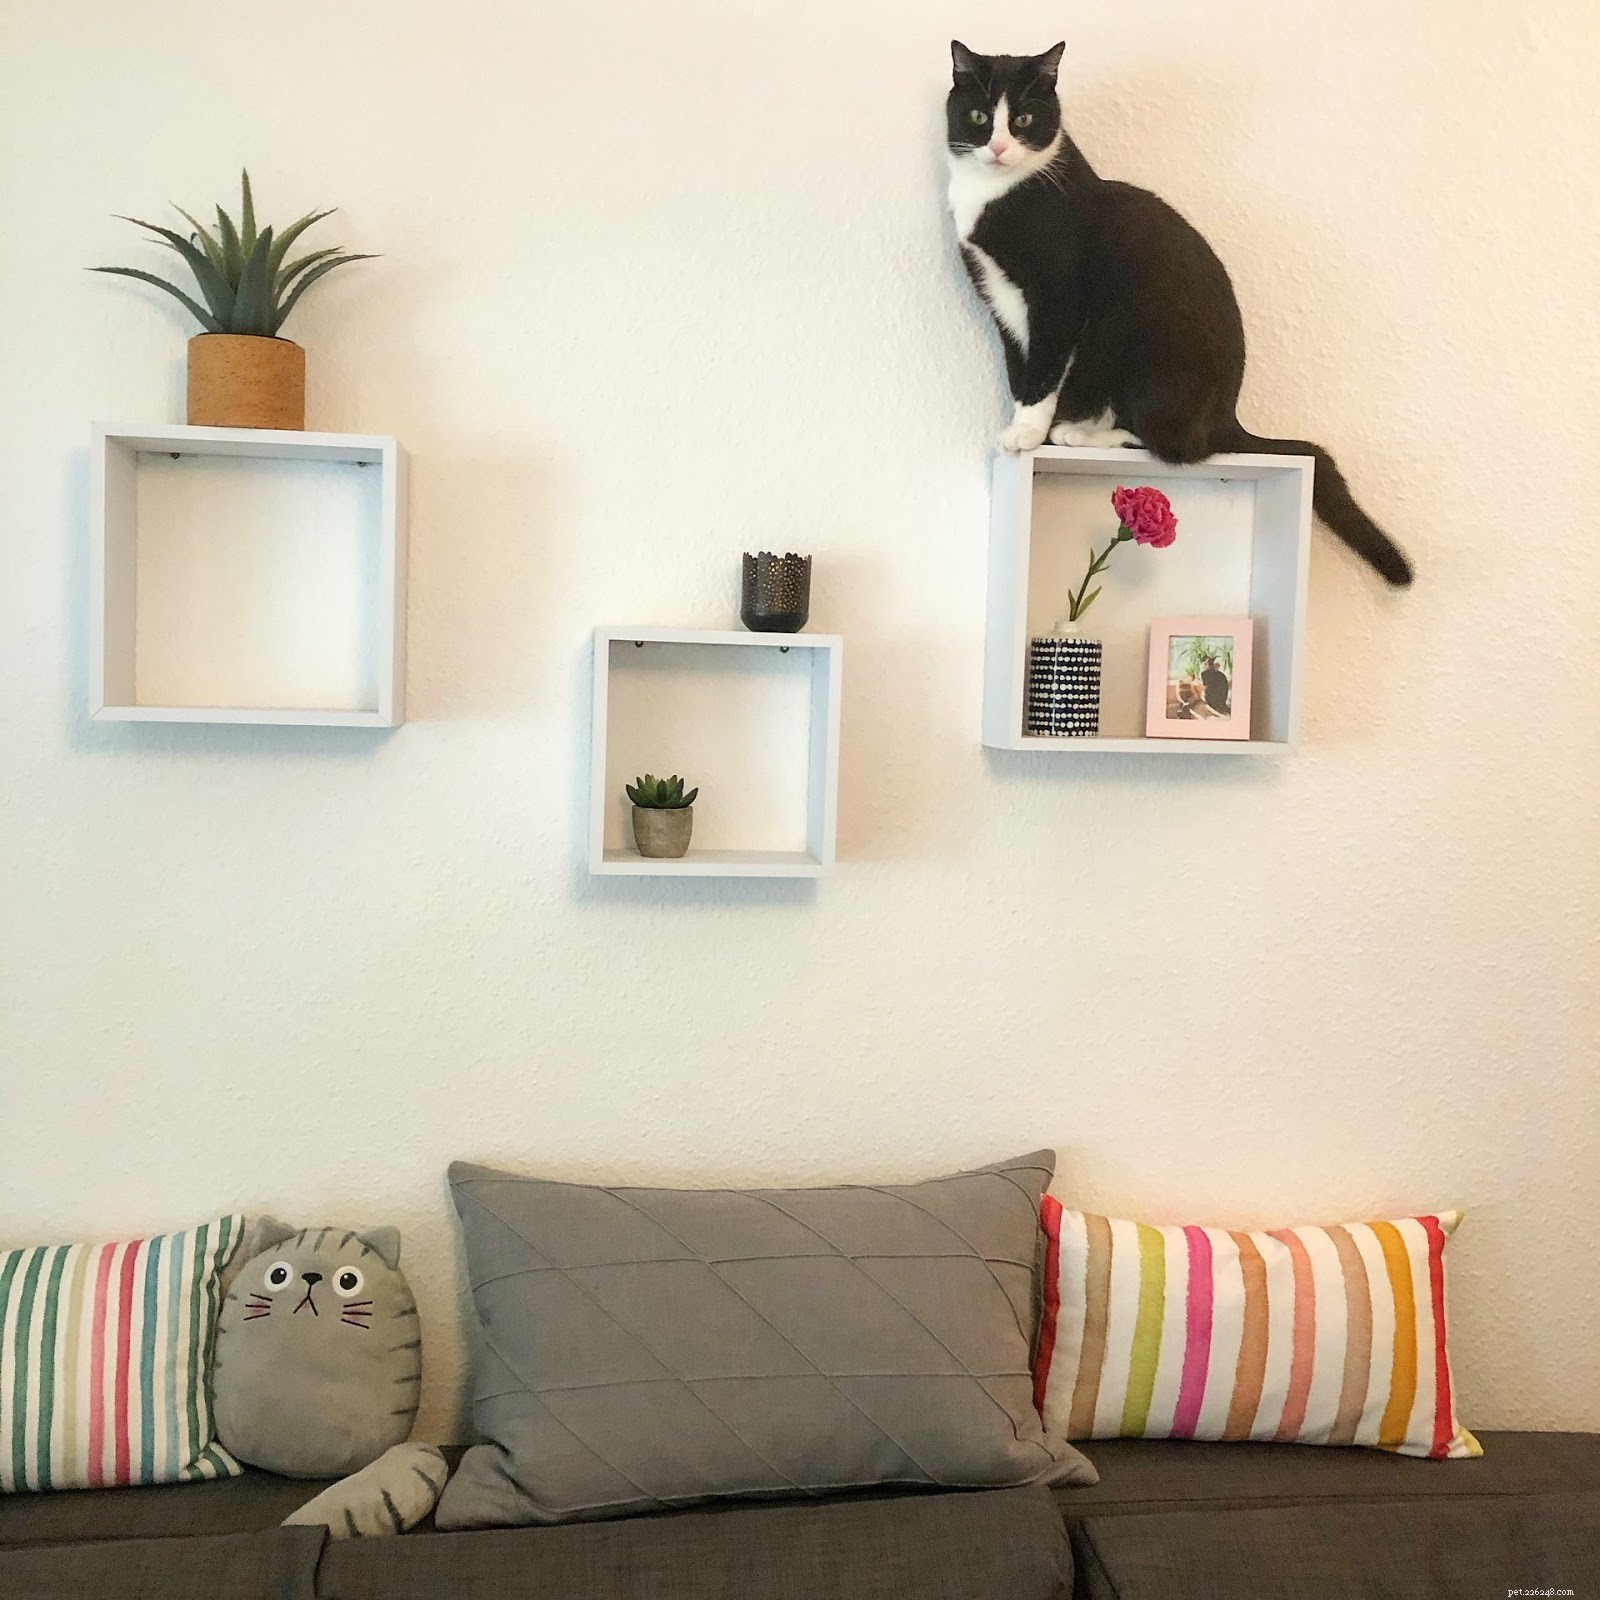 Come possedere un gatto in un appartamento:una guida per i proprietari di gatti urbani